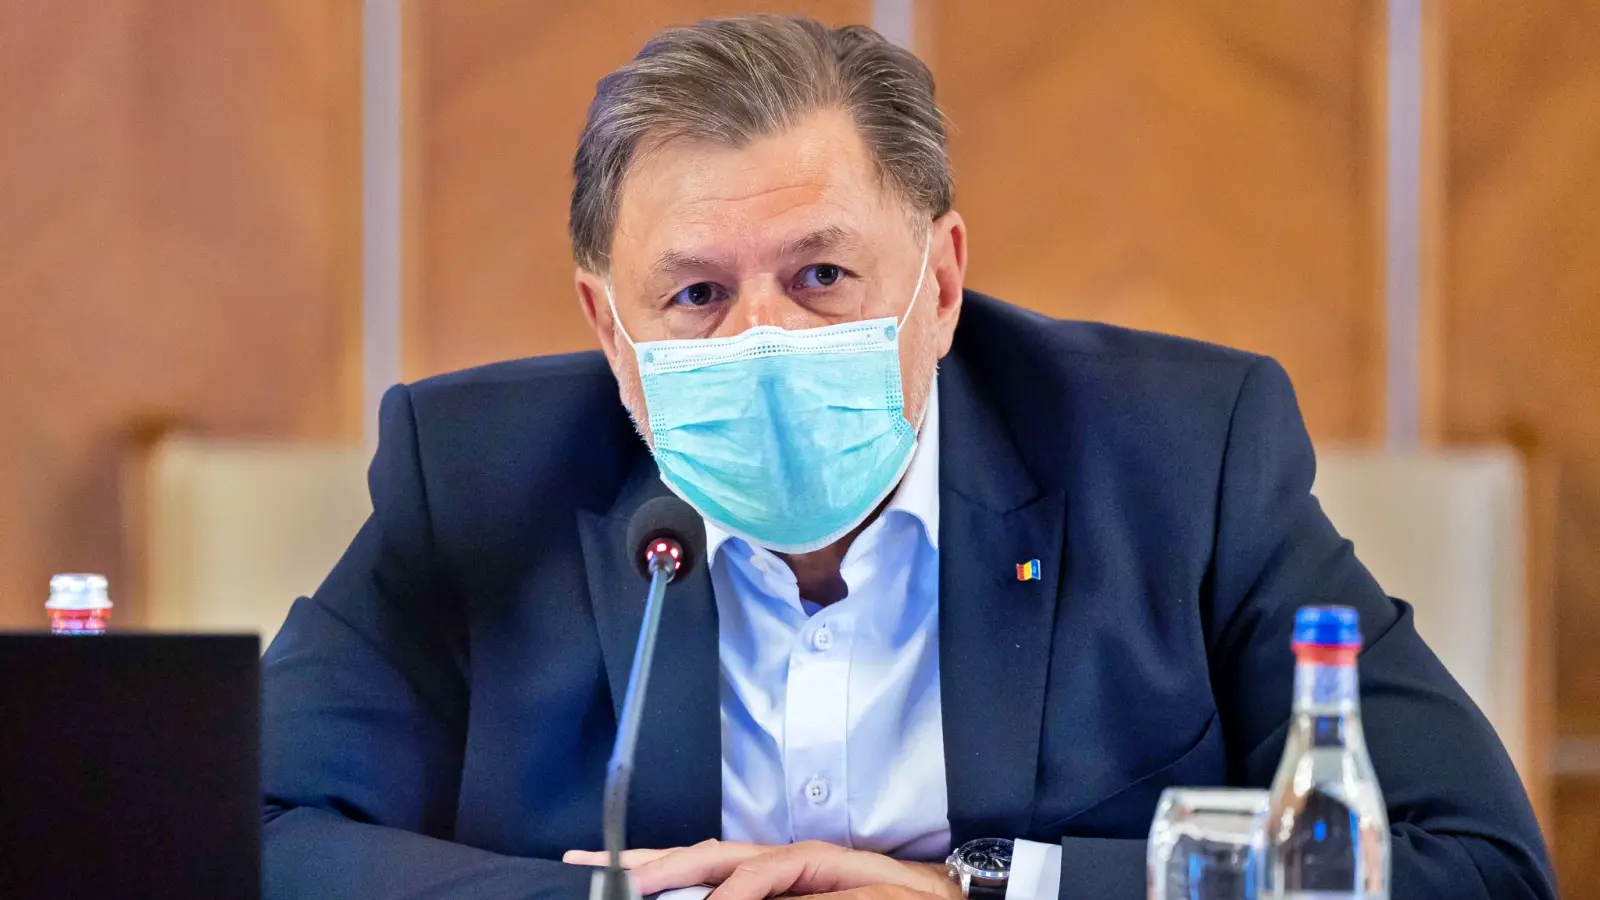 Terveysministeri VIIMEINEN Tärkeä ilmoitus Riidanalaiset päätökset Romania